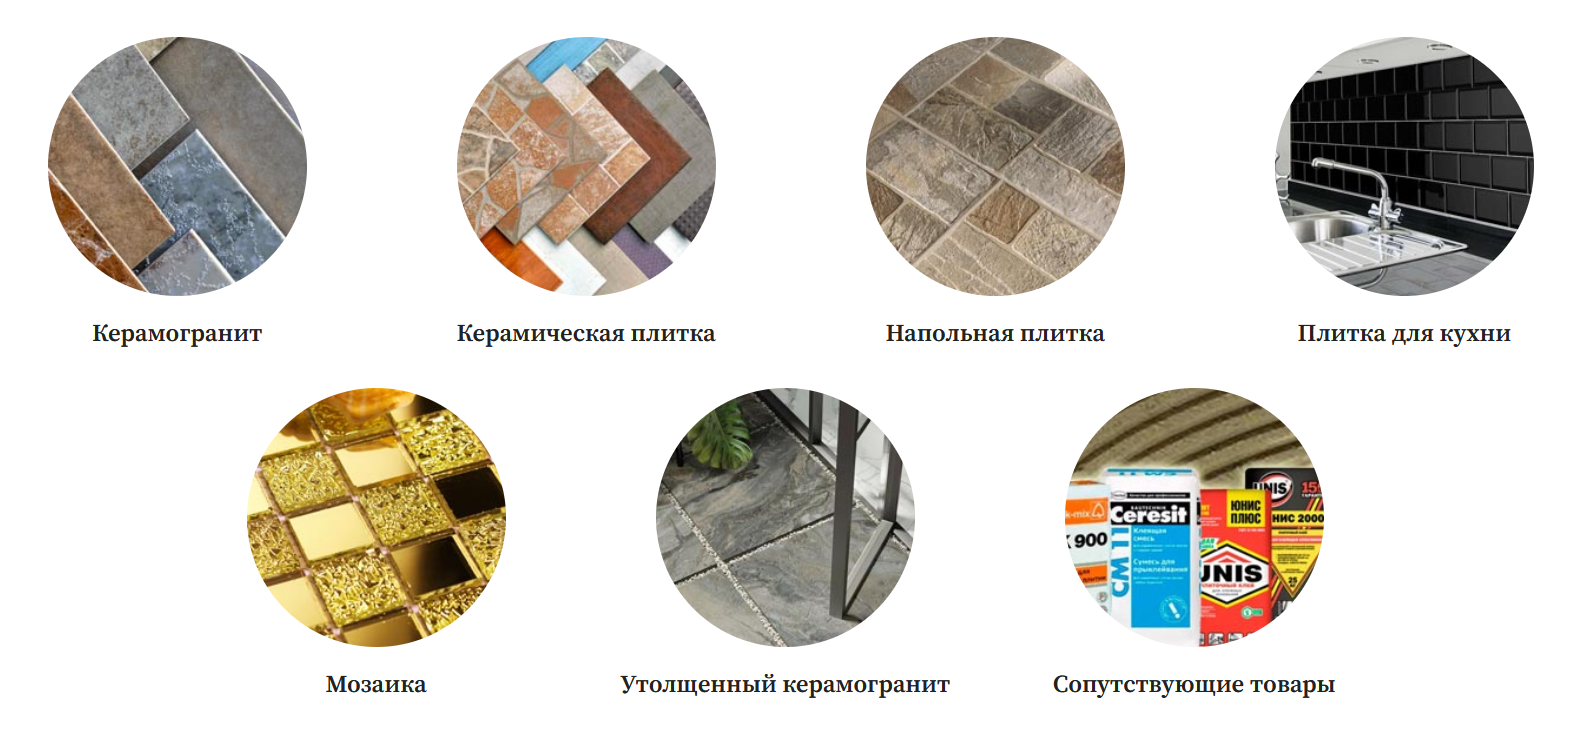 фото: Topplitka: широкий выбор керамической плитки и керамогранита в Москве